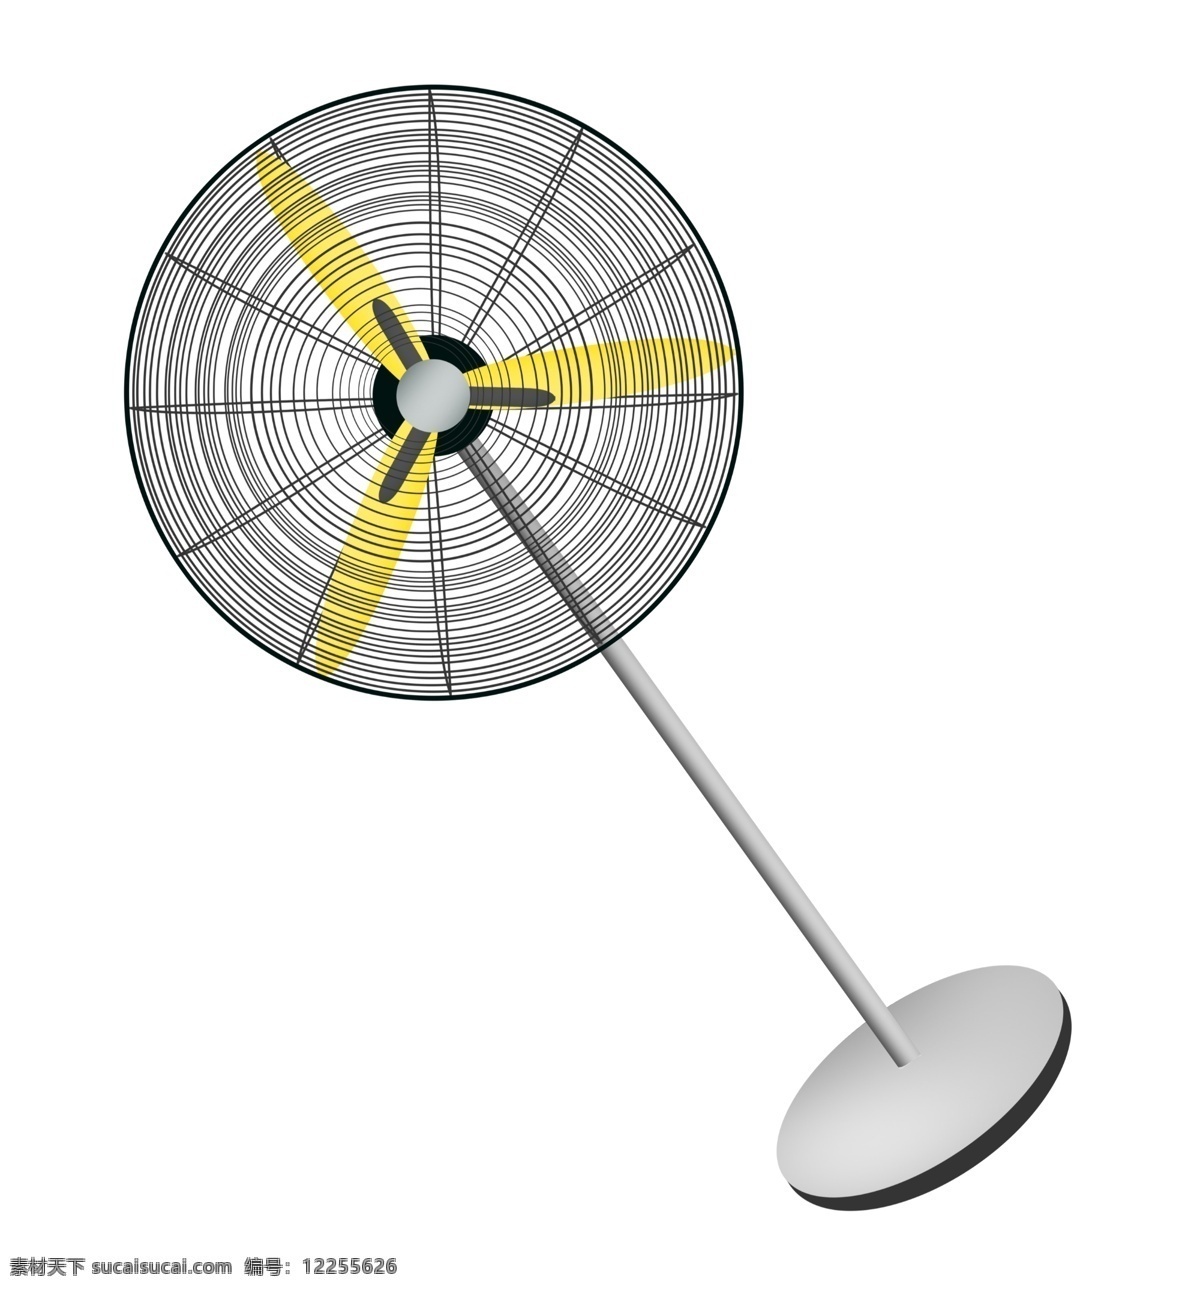 大型 电风扇 创意 插图 枫叶 大型风扇 夏季